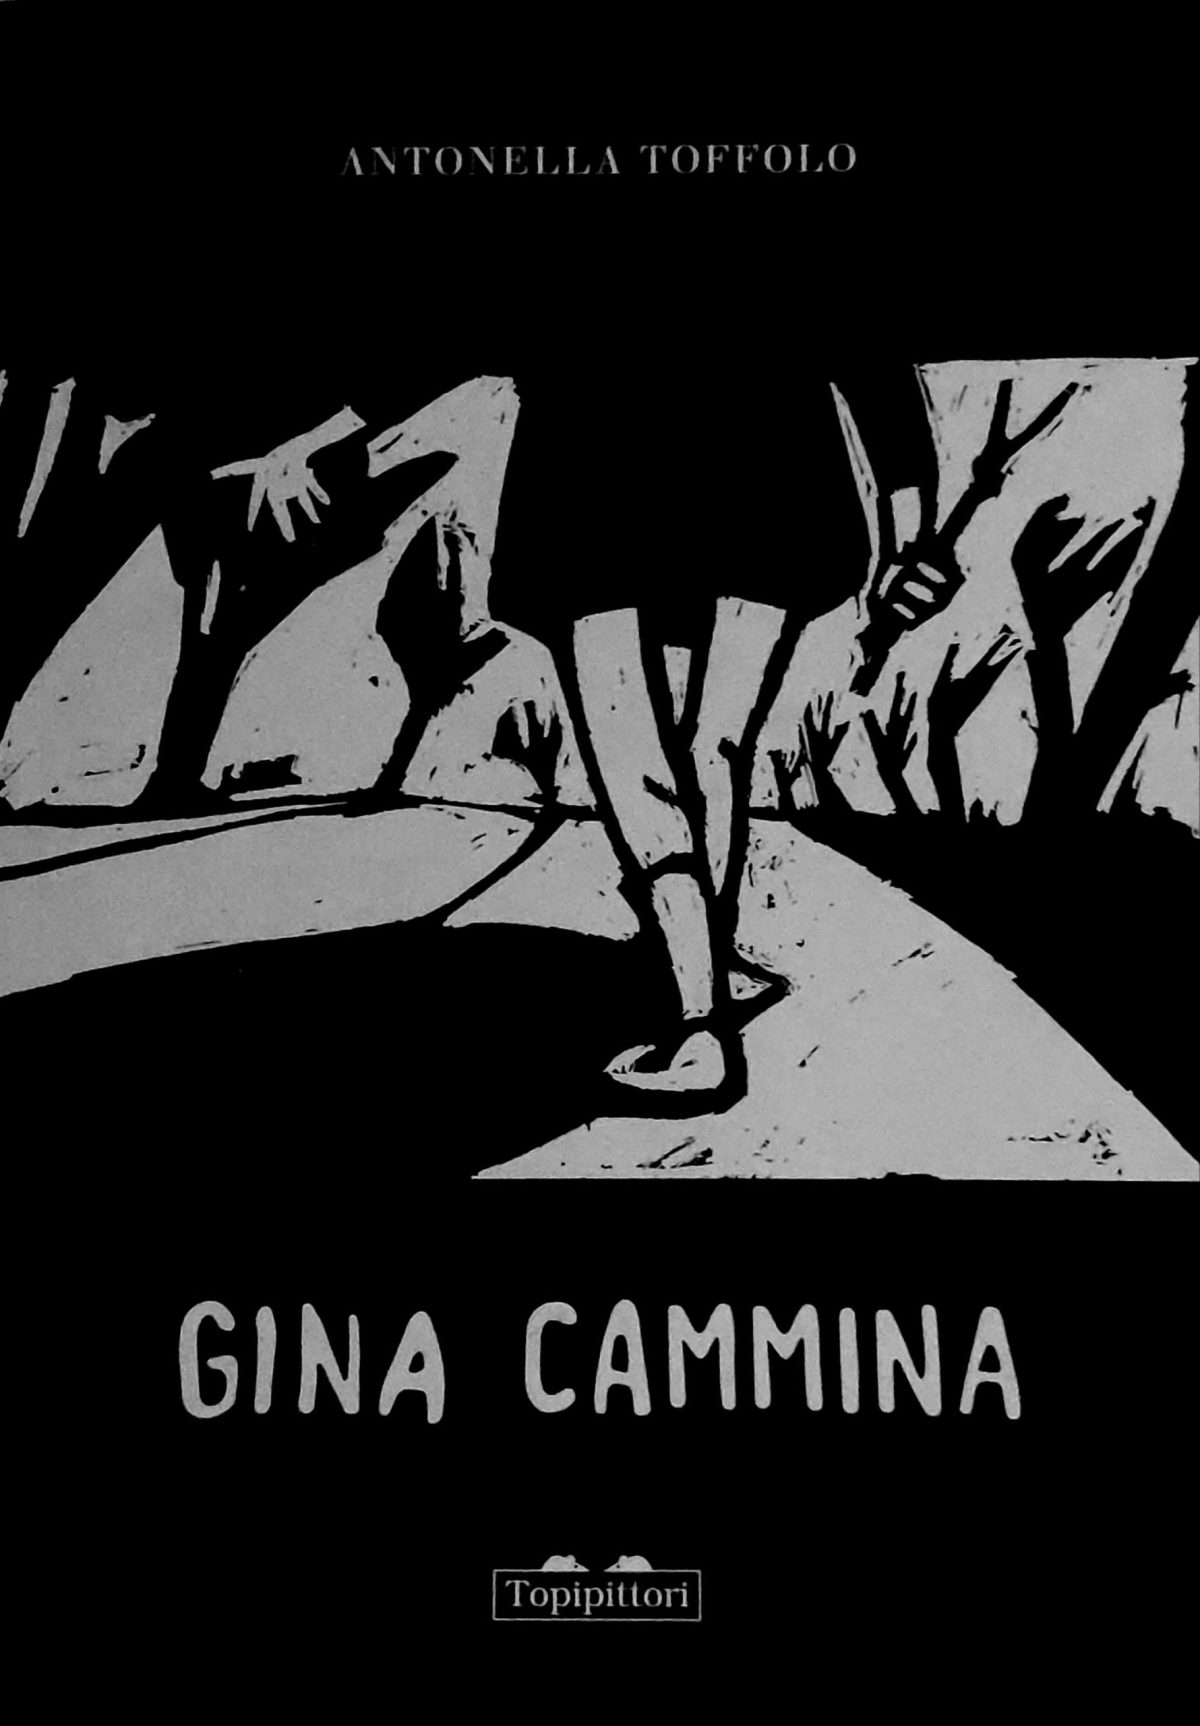 Mio caro fumetto... - Copertina di Gina cammina, zirudella grafica di Antonella Toffolo